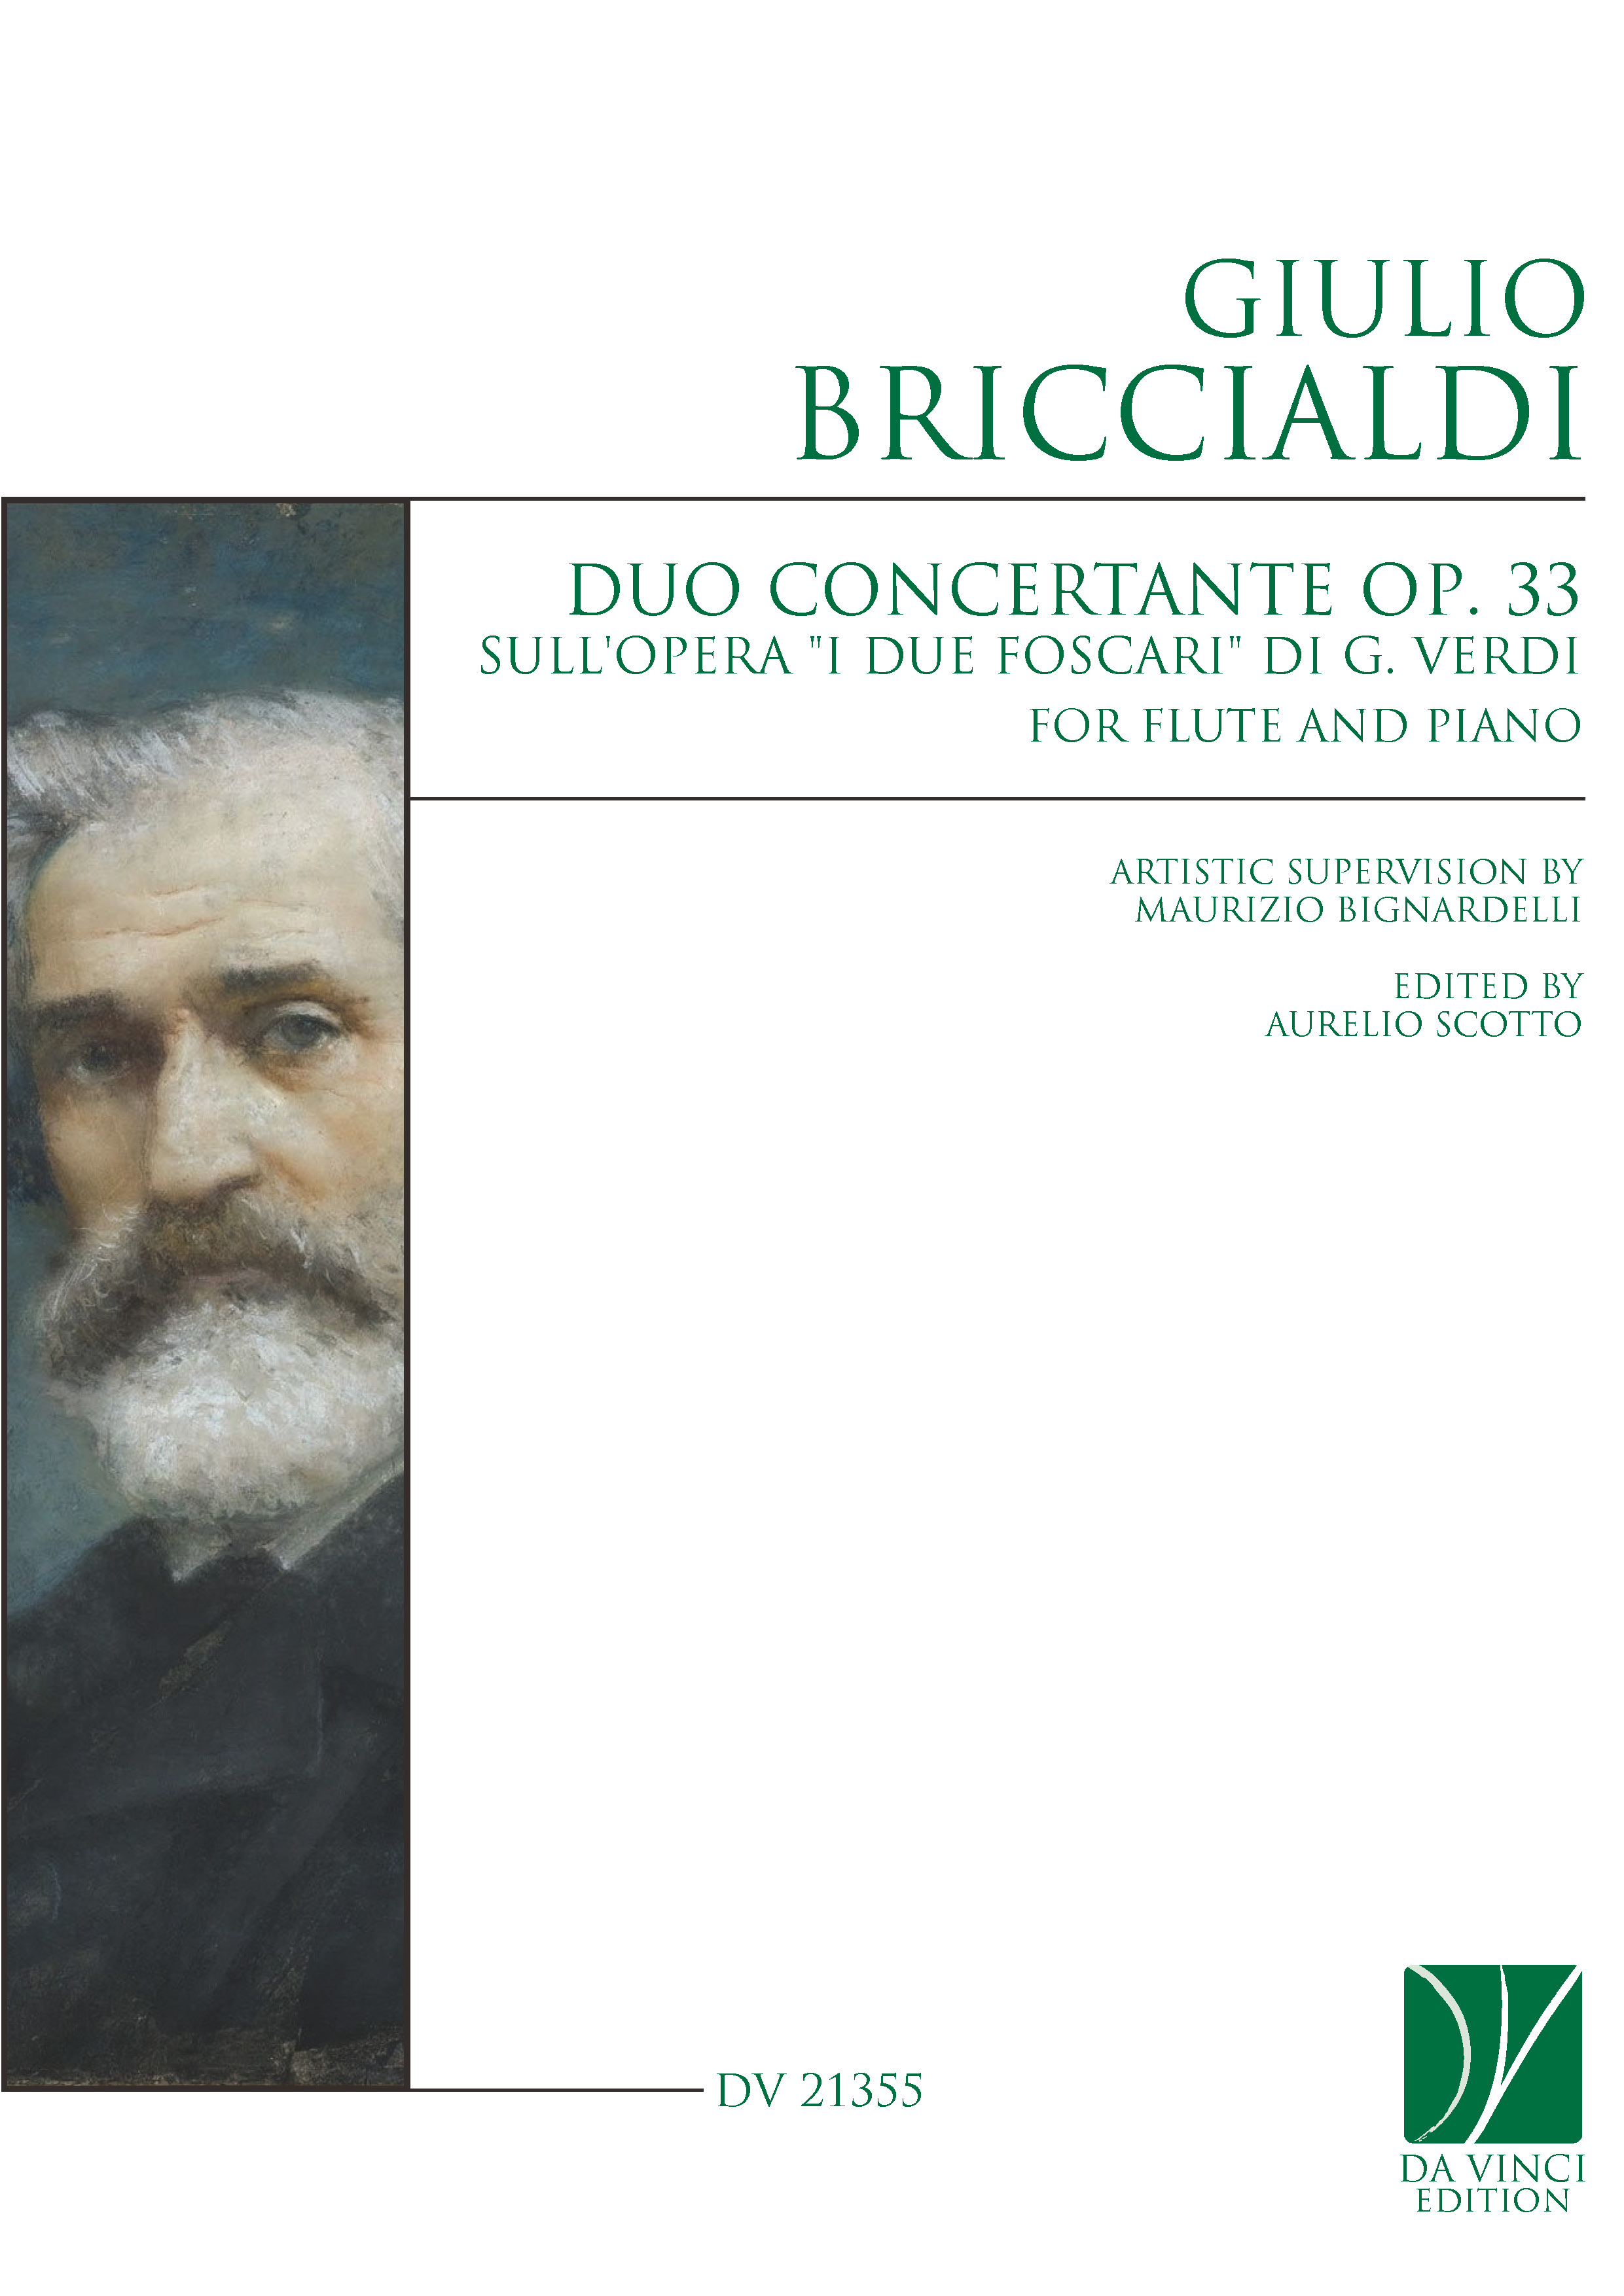 DV 21335 - Cover (Briccialdi - Duo Concertante)